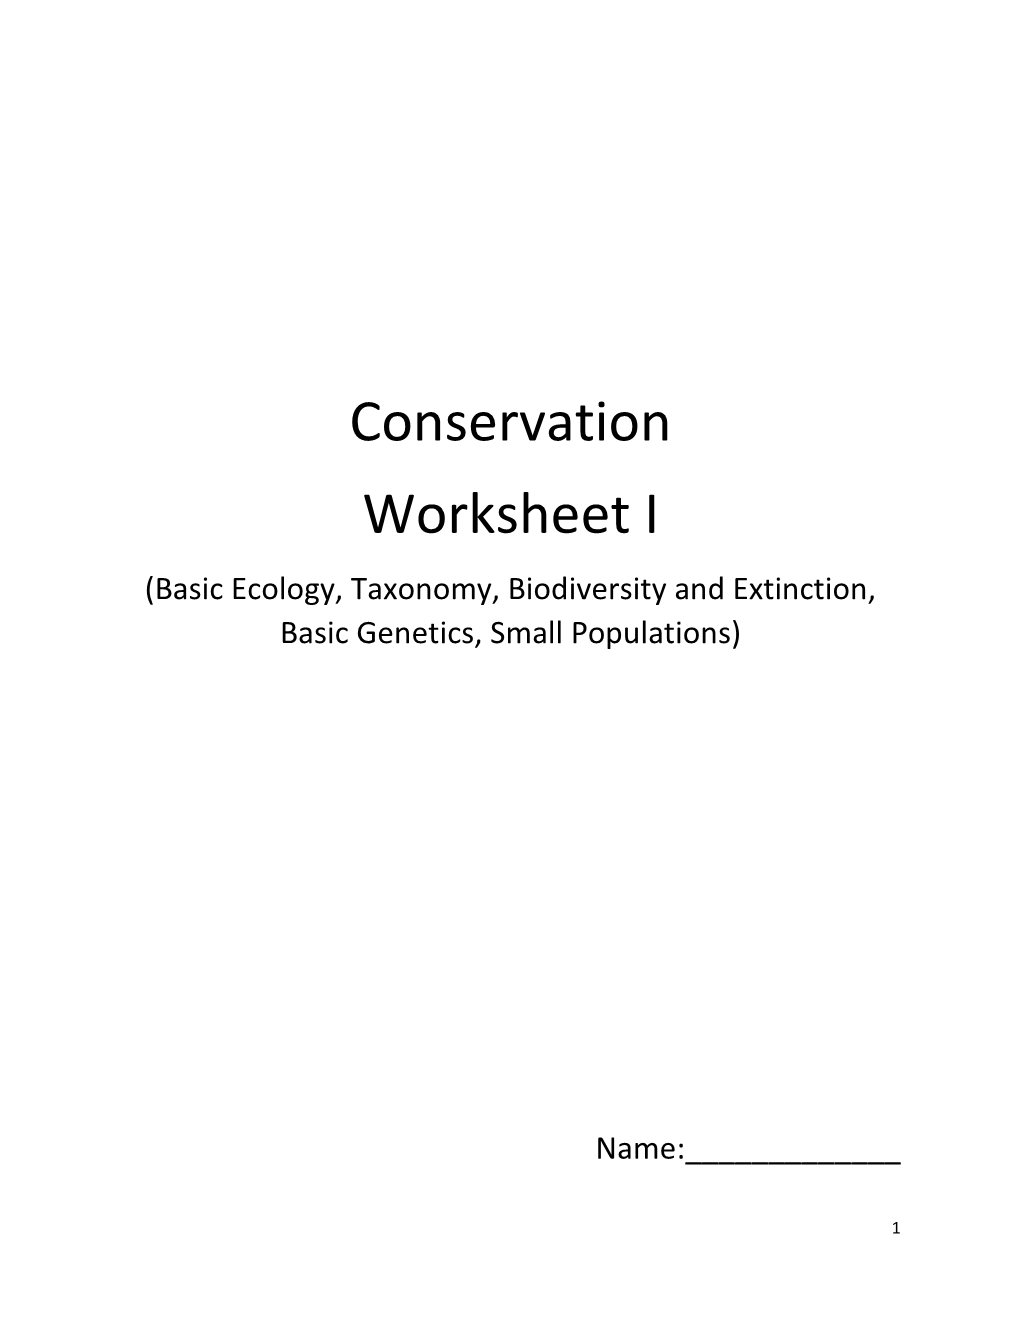 Conservation Worksheet I (Basic Ecology, Taxonomy, Biodiversity and Extinction, Basic Genetics, Small Populations)